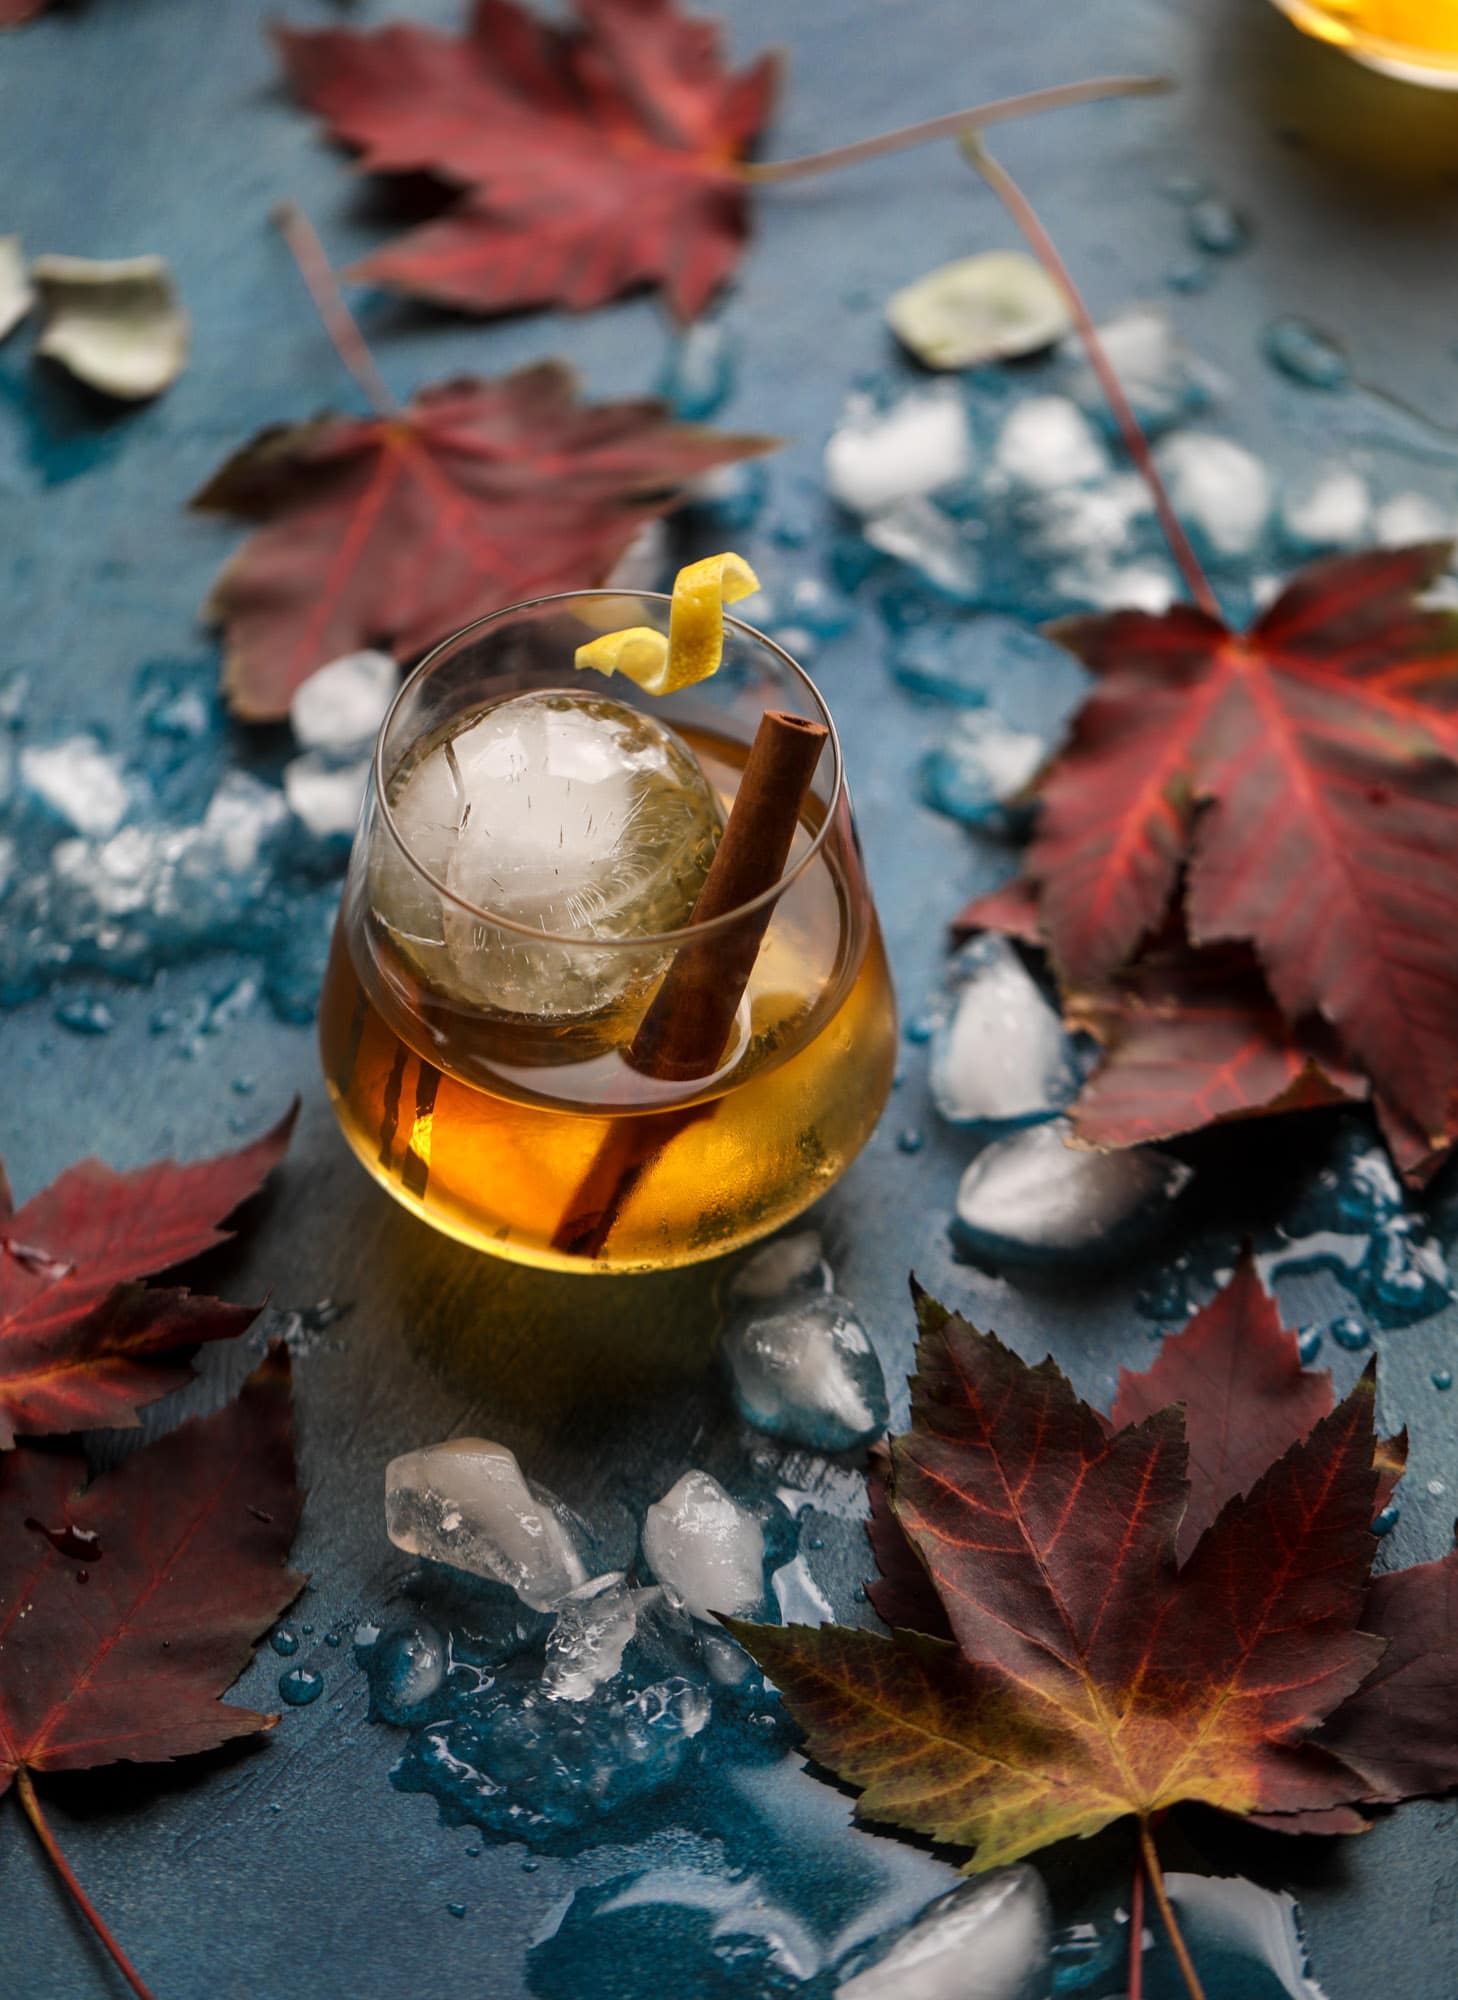 这款熏枫老式鸡尾酒是秋季和冬季的完美烟熏饮料。它是温的，充满了惊人的味道，烟熏枫波本威士忌和纯枫糖浆。美味!我#枫#受